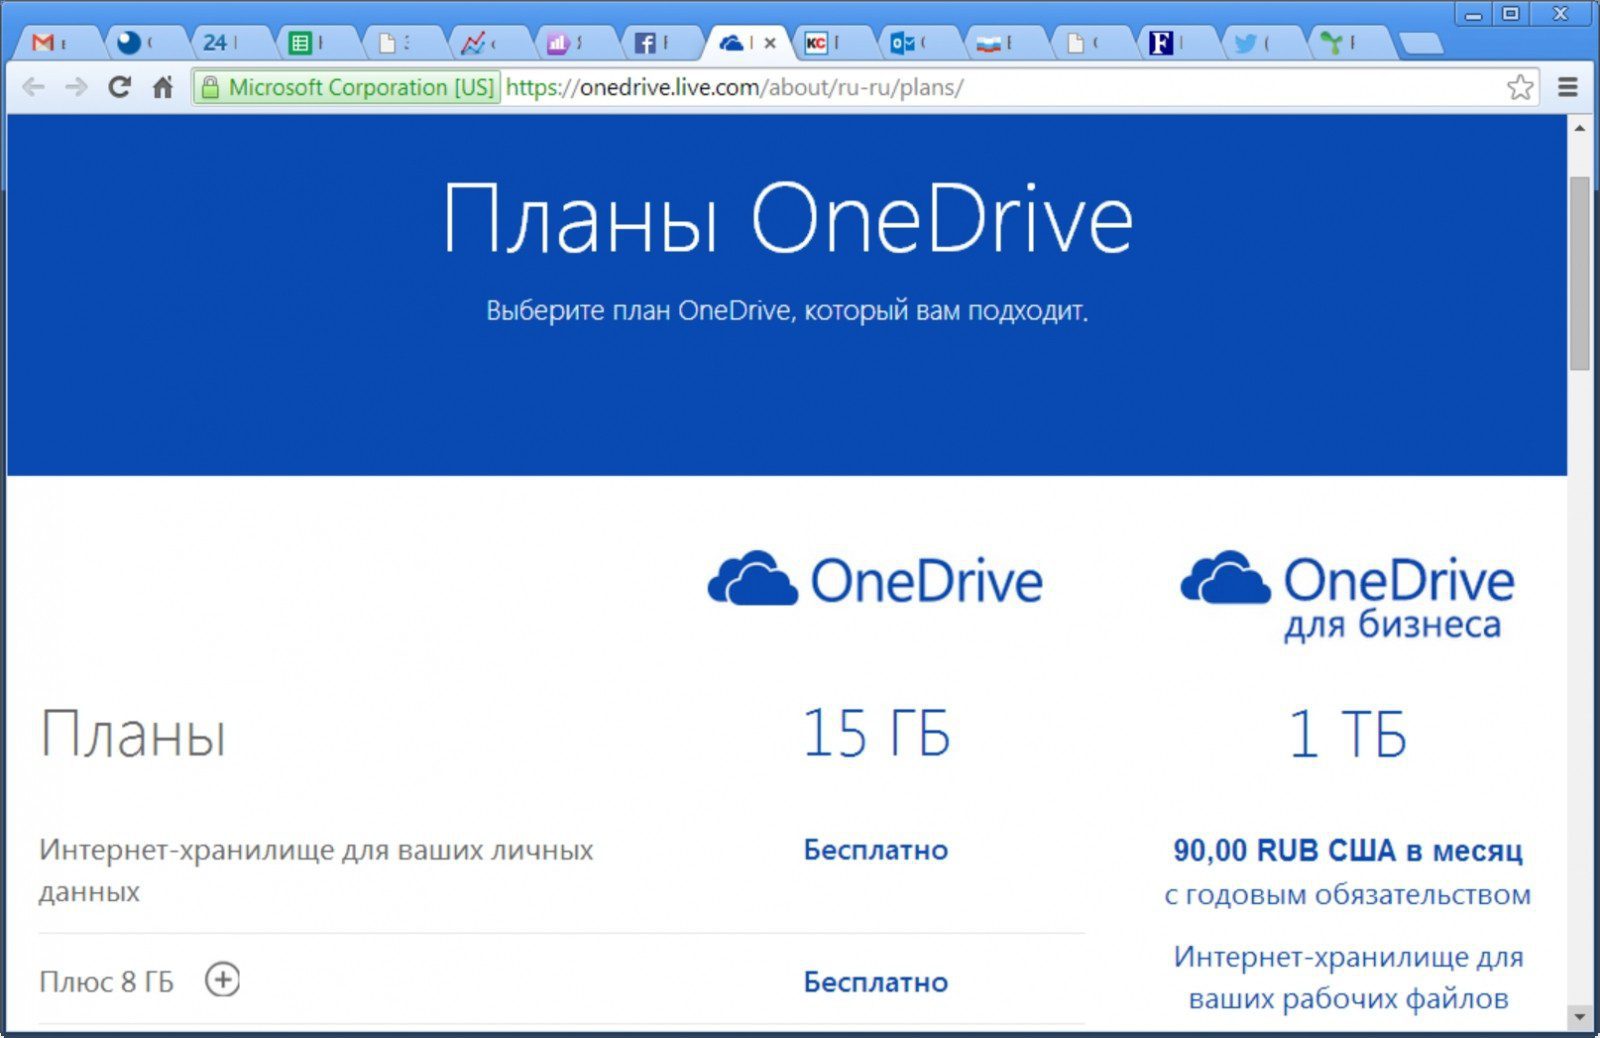 Onedrive live com edit. Microsoft ONEDRIVE. Майкрософт ONEDRIVE. ONEDRIVE для бизнеса. ONEDRIVE.Live.com.